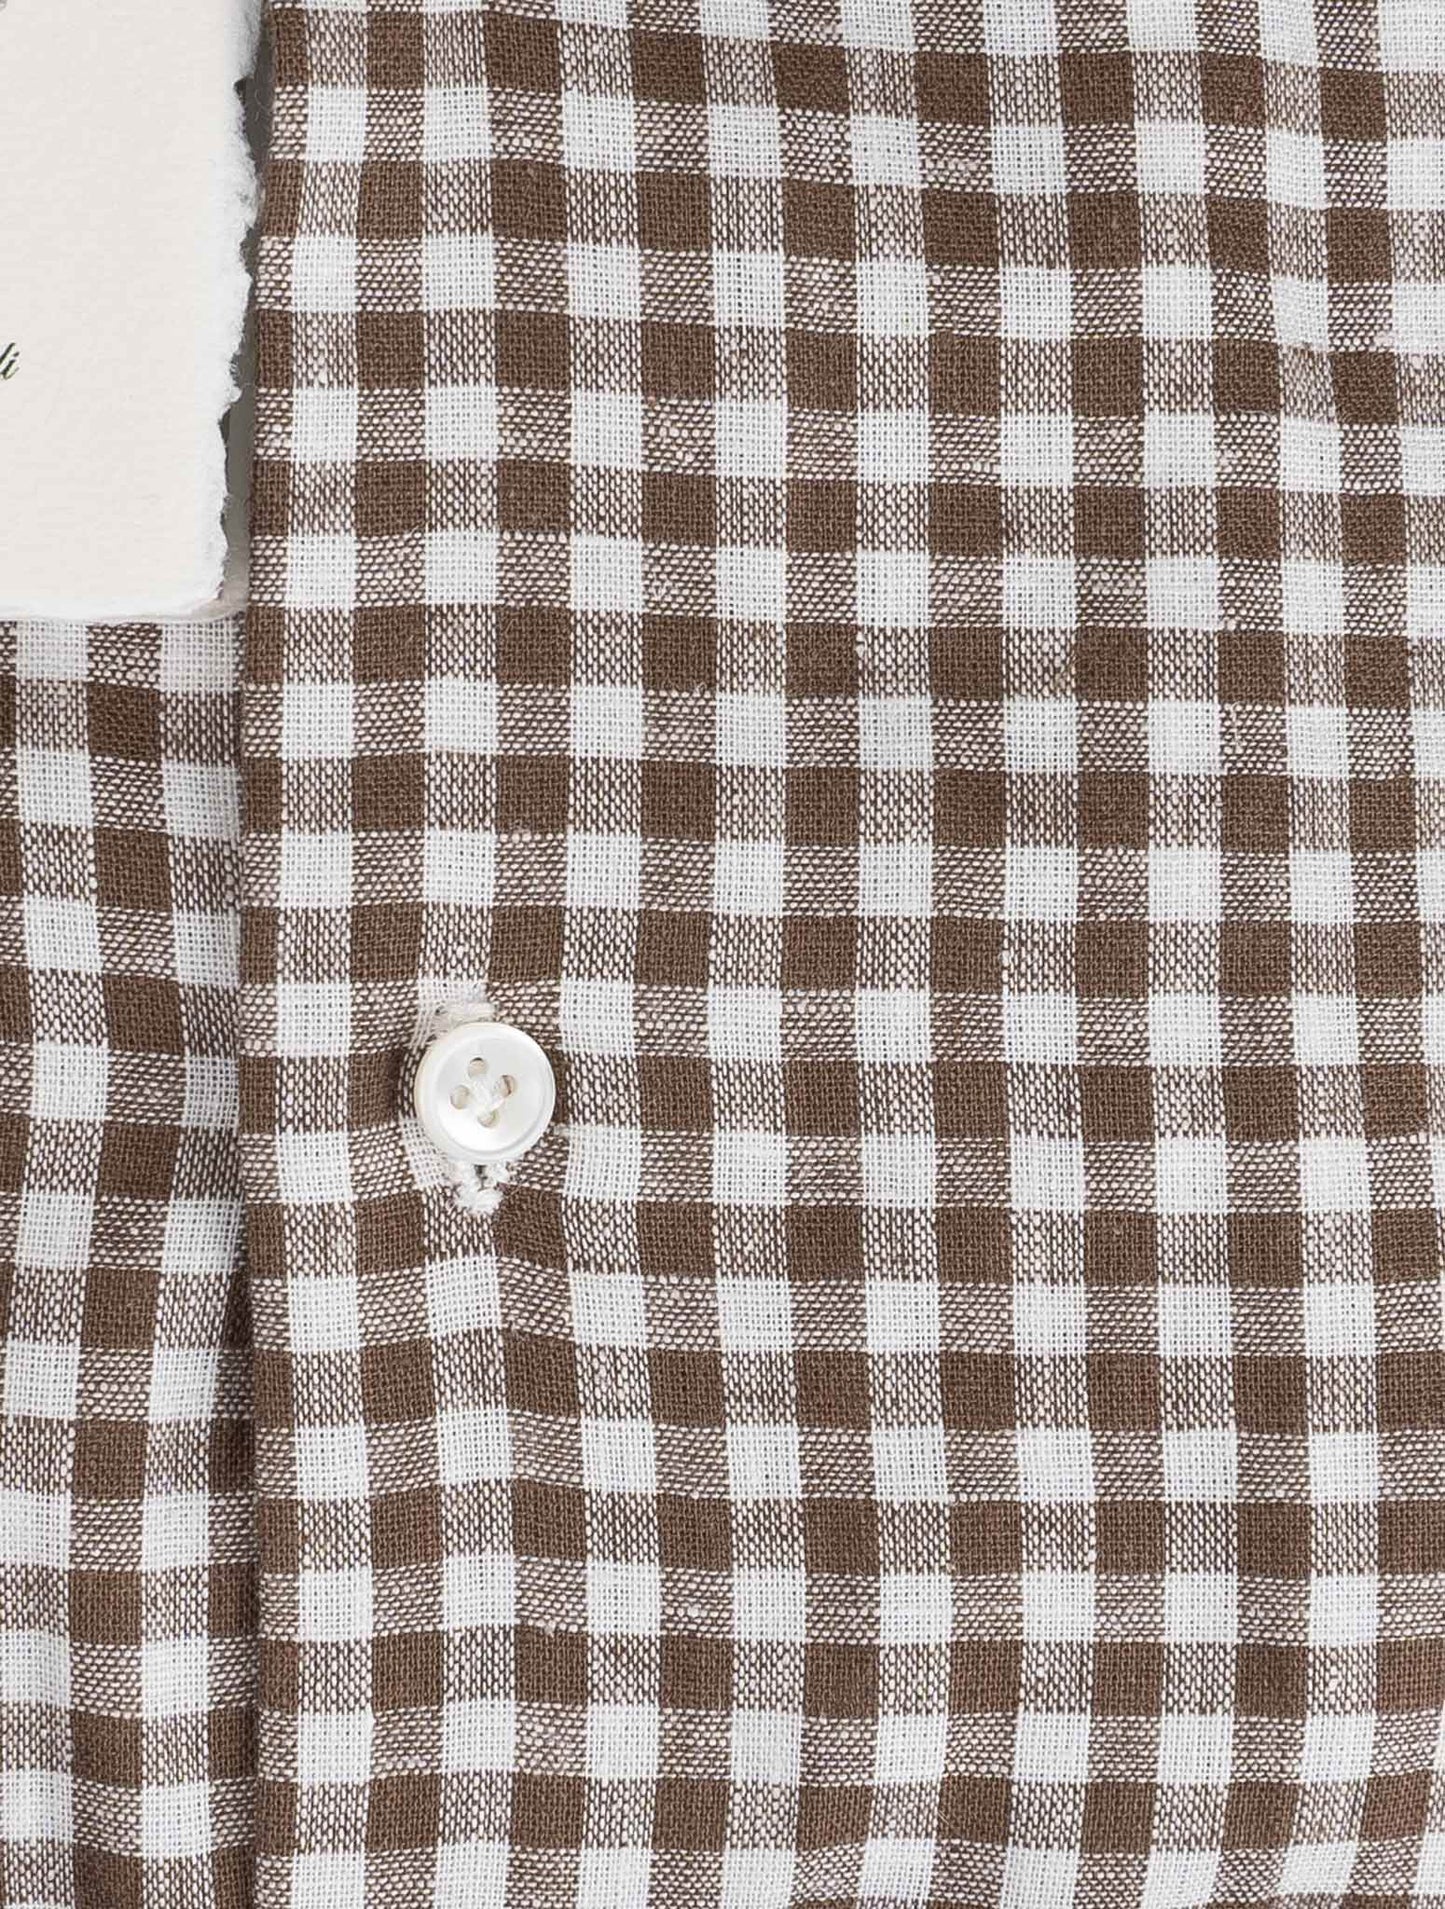 Luigi Borrelli brun hvid line Cotton skjorte